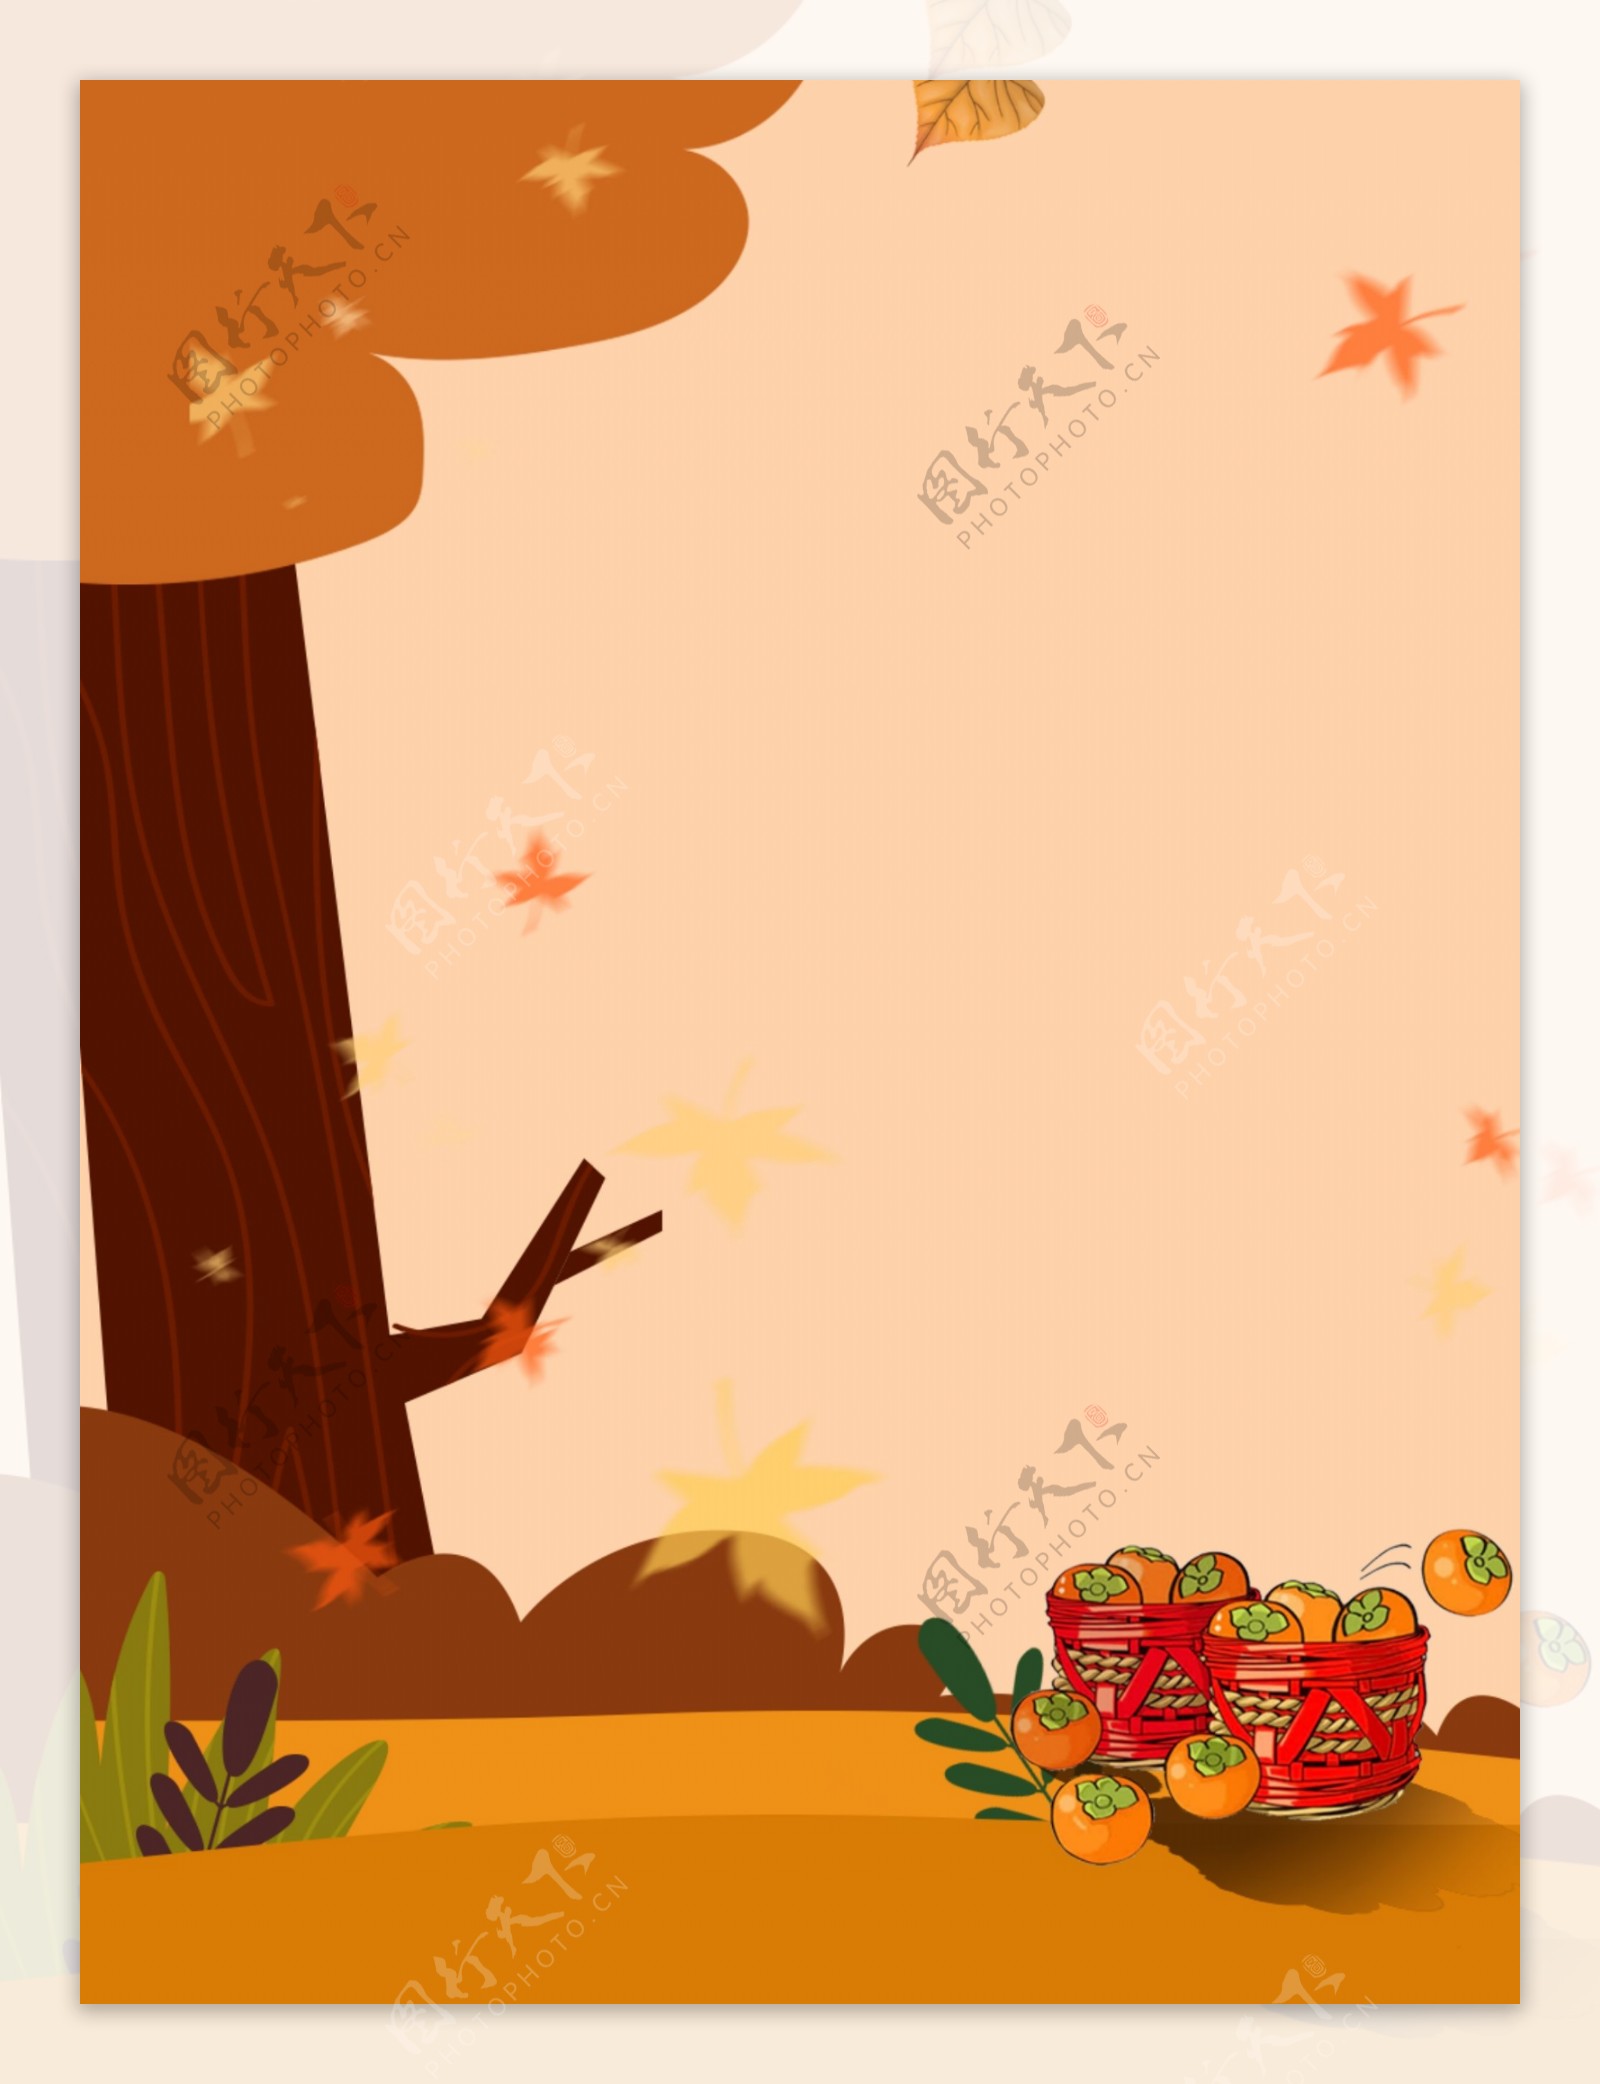 秋季风景手绘食物背景